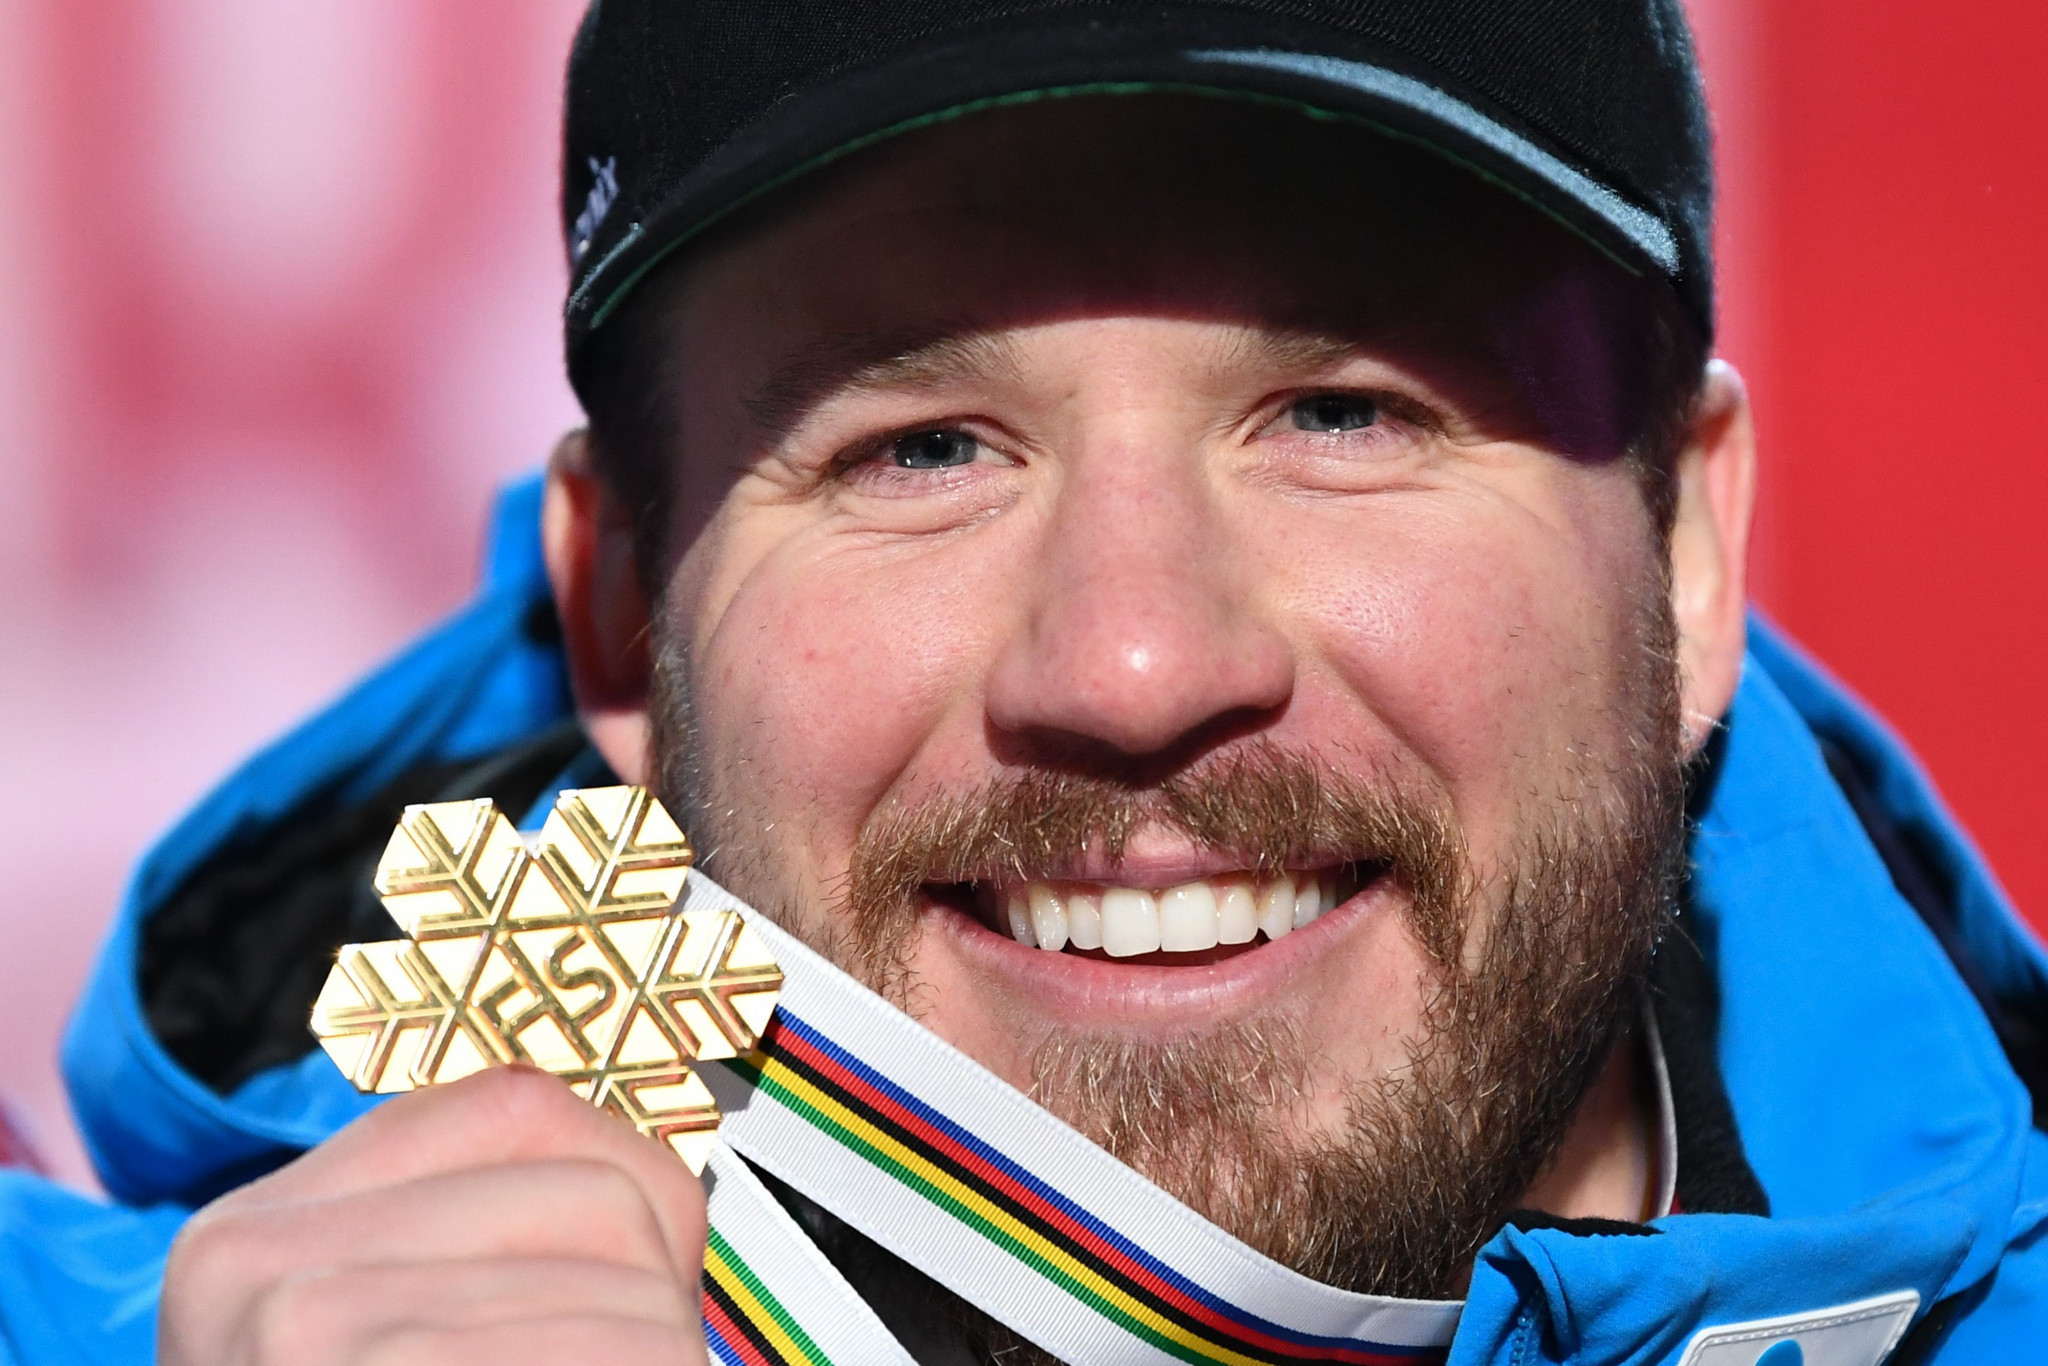 Kjetil Jansrud became the oldest winner of the men's race at the World Championships ©Getty Images